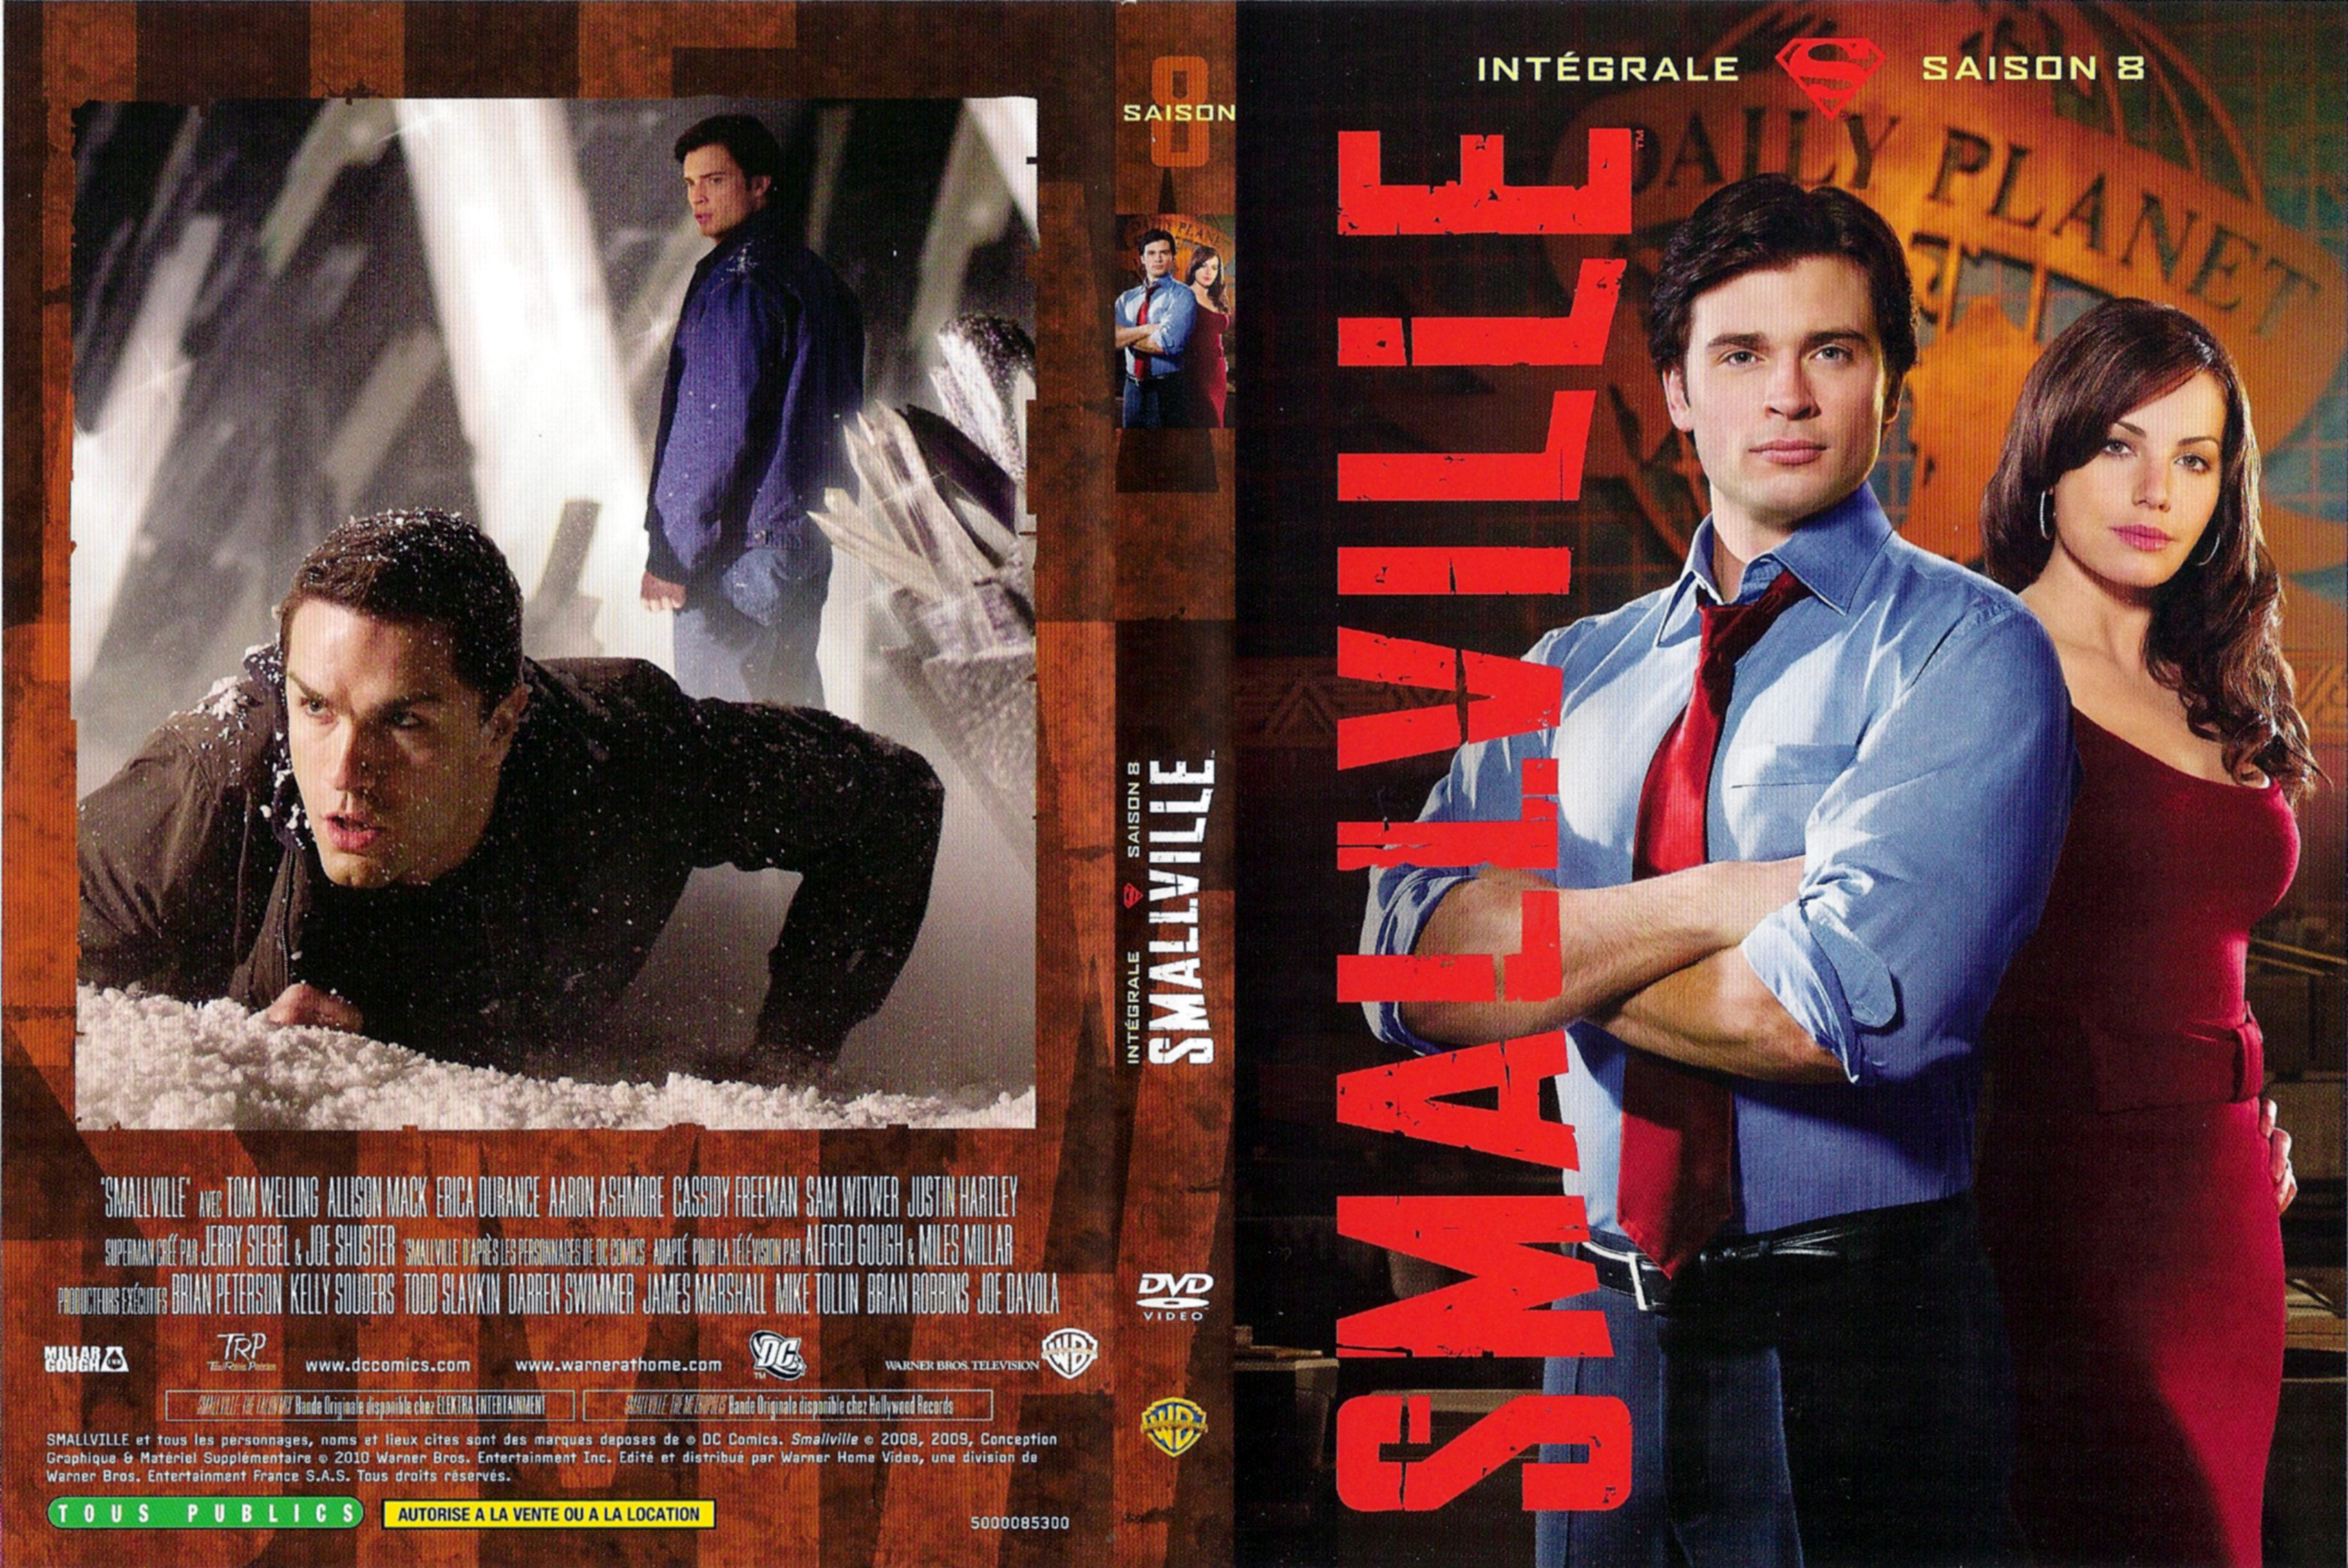 Jaquette DVD Smallville saison 8 COFFRET v2